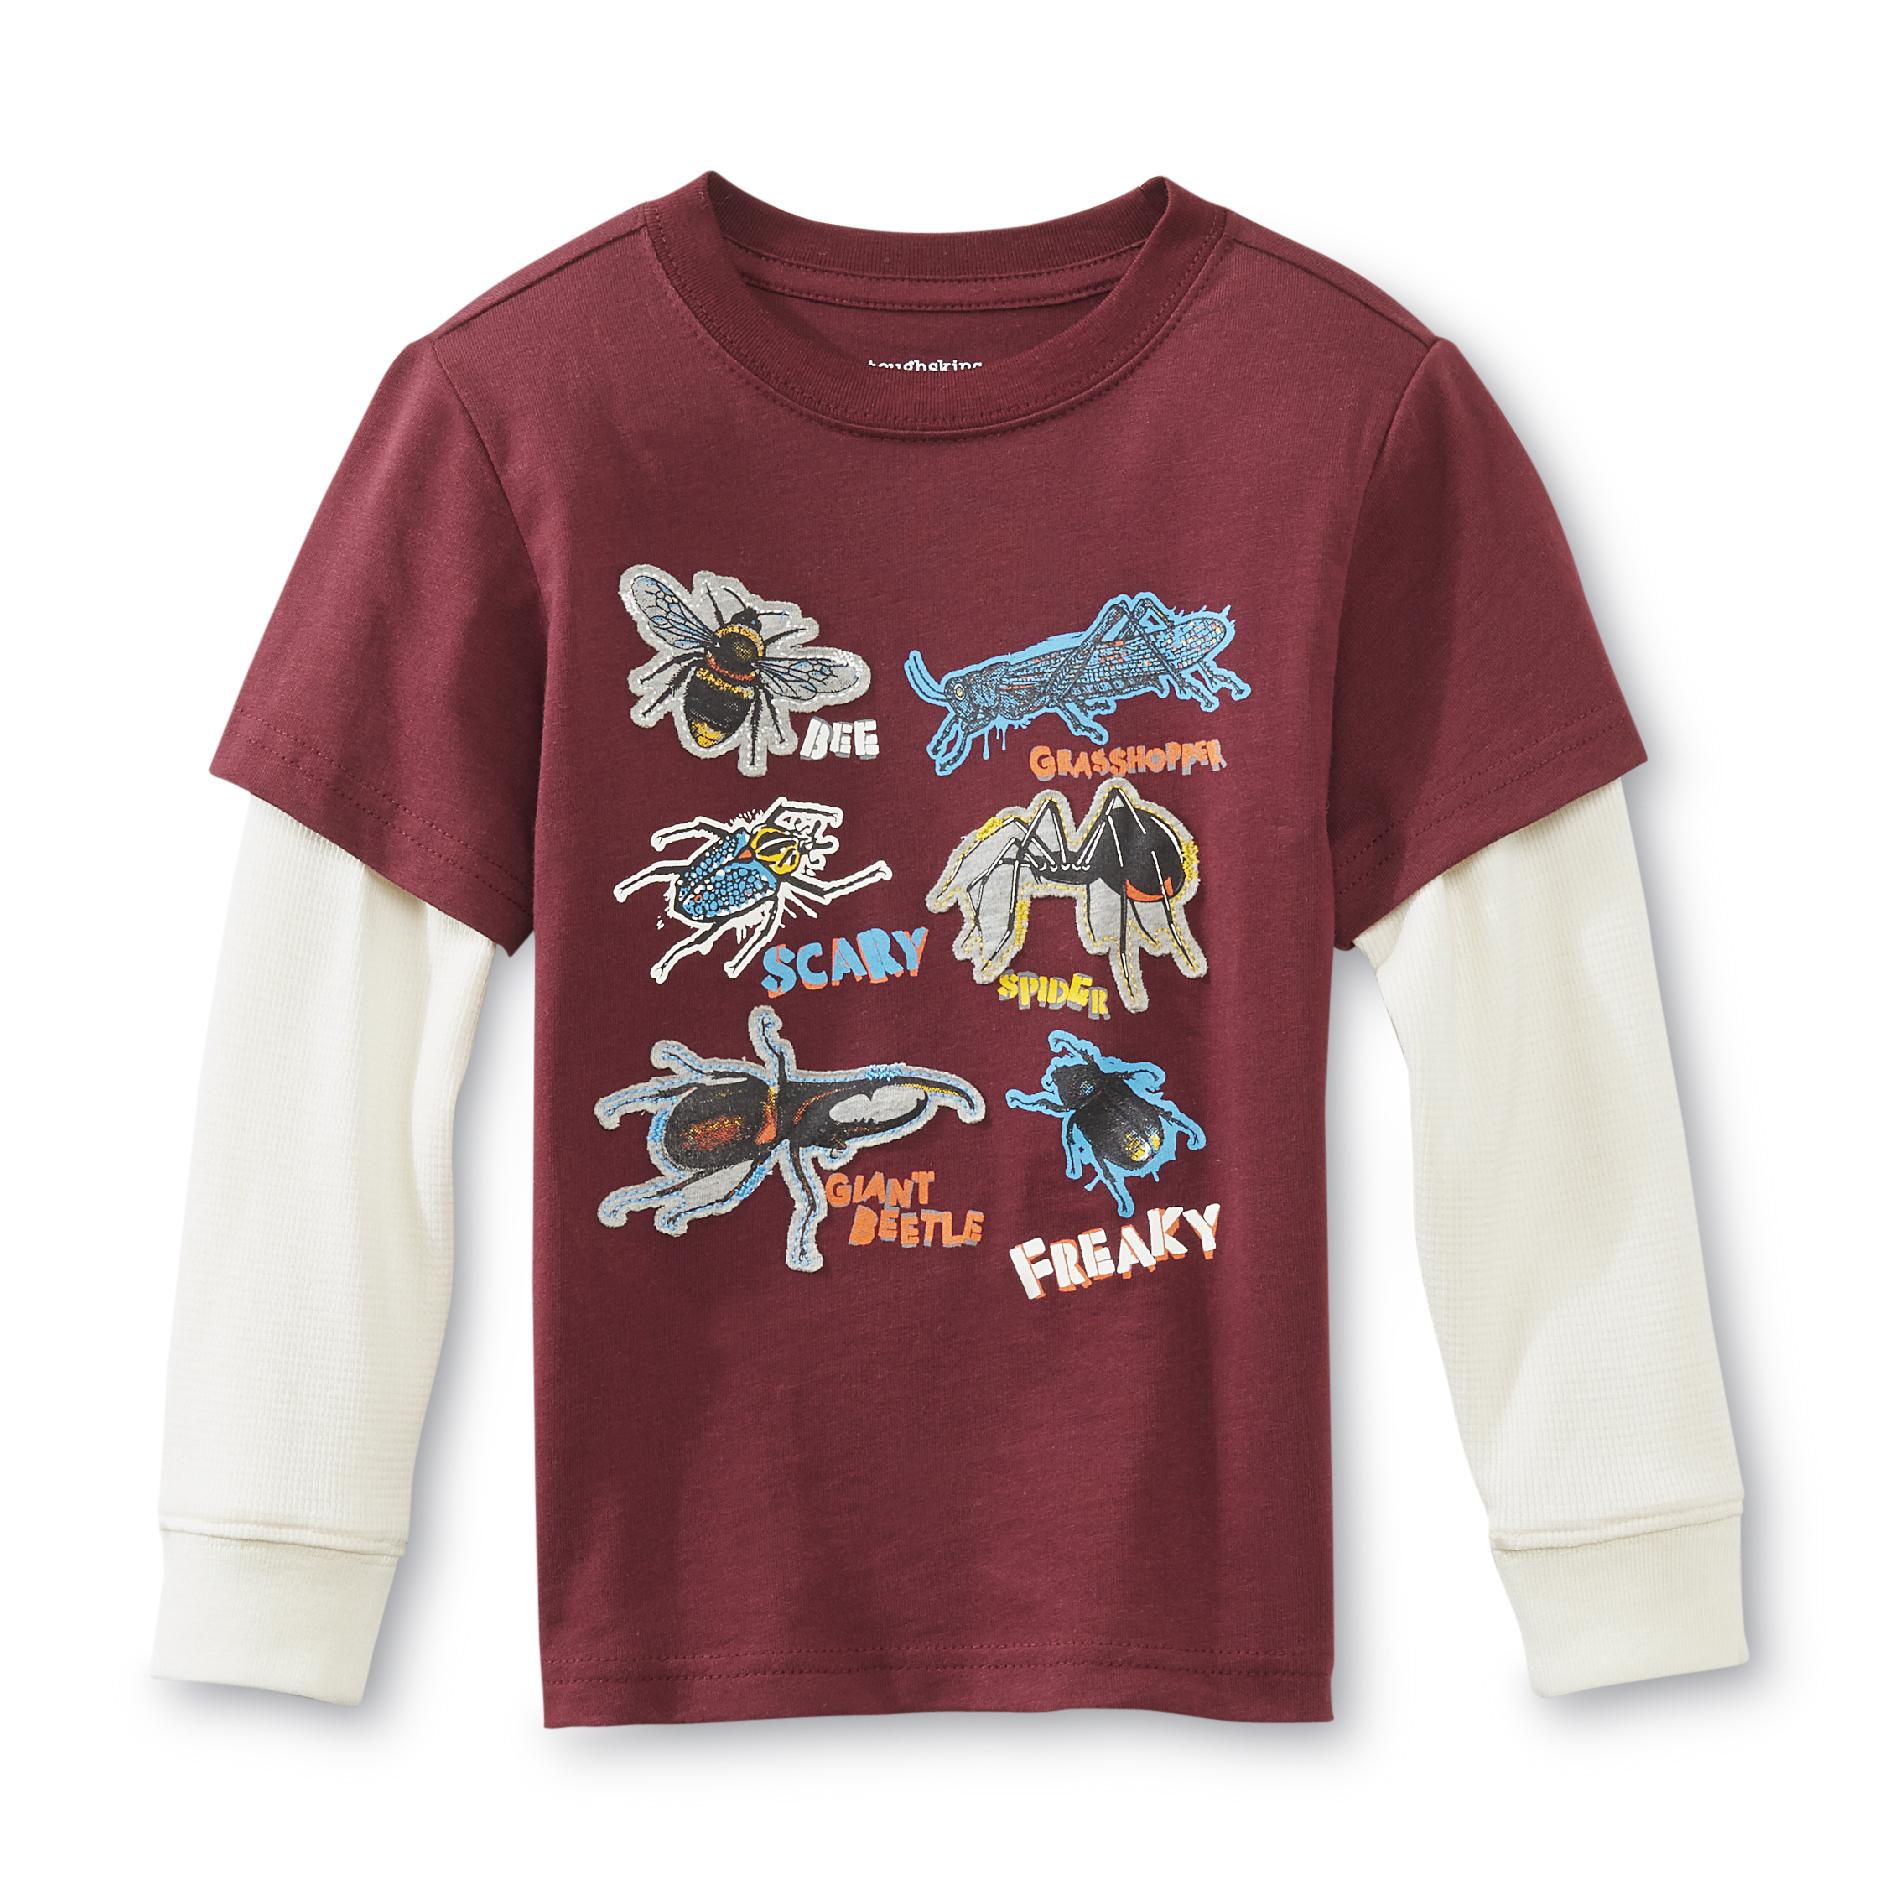 Toughskins Boy's Graphic T-Shirt - Bugs